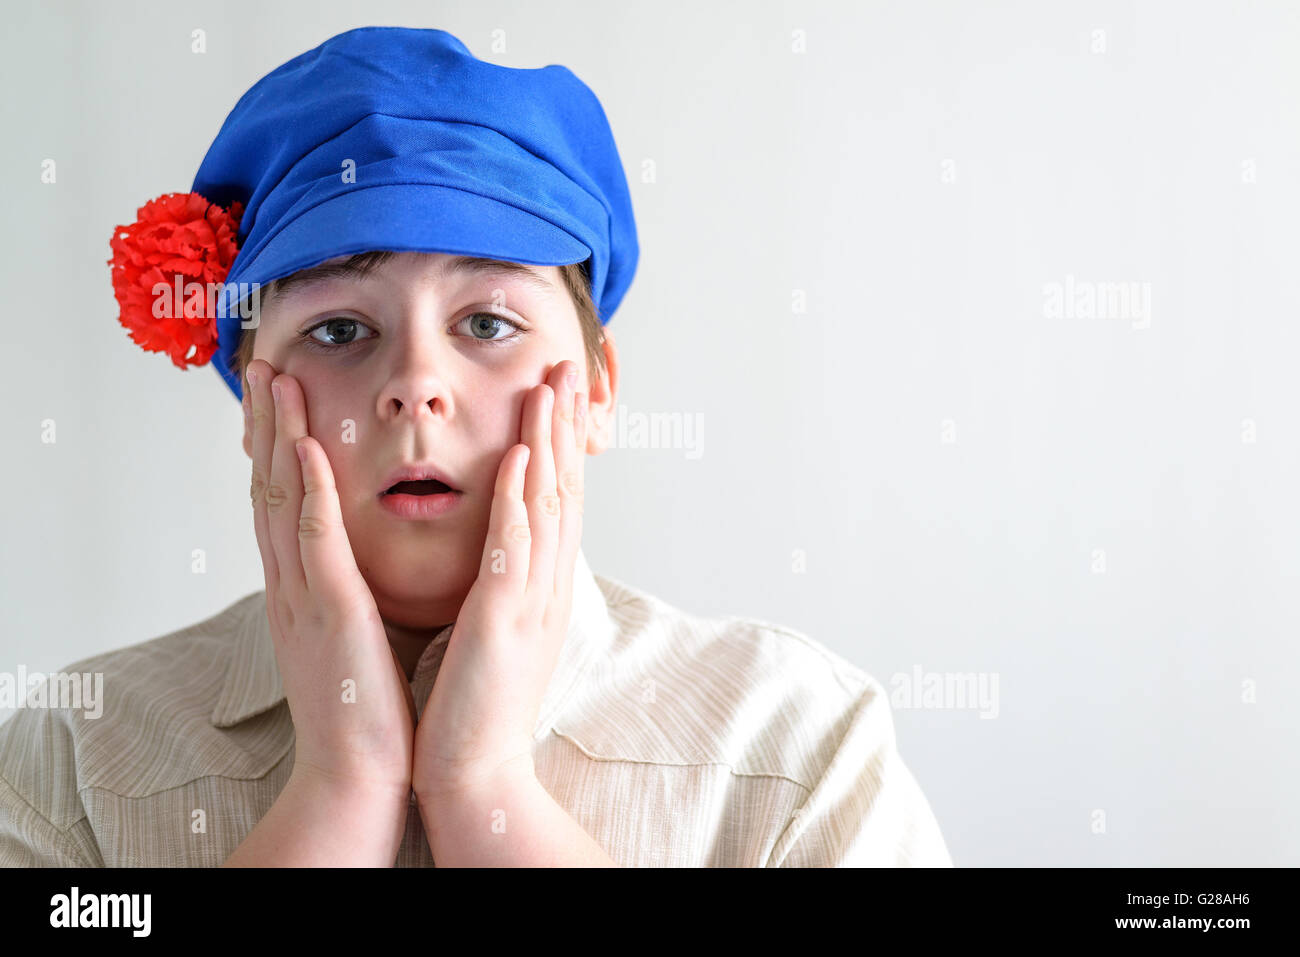 Ritratto di sorpresa ragazzo adolescente in russo cappuccio nazionale con chiodi di garofano Foto Stock